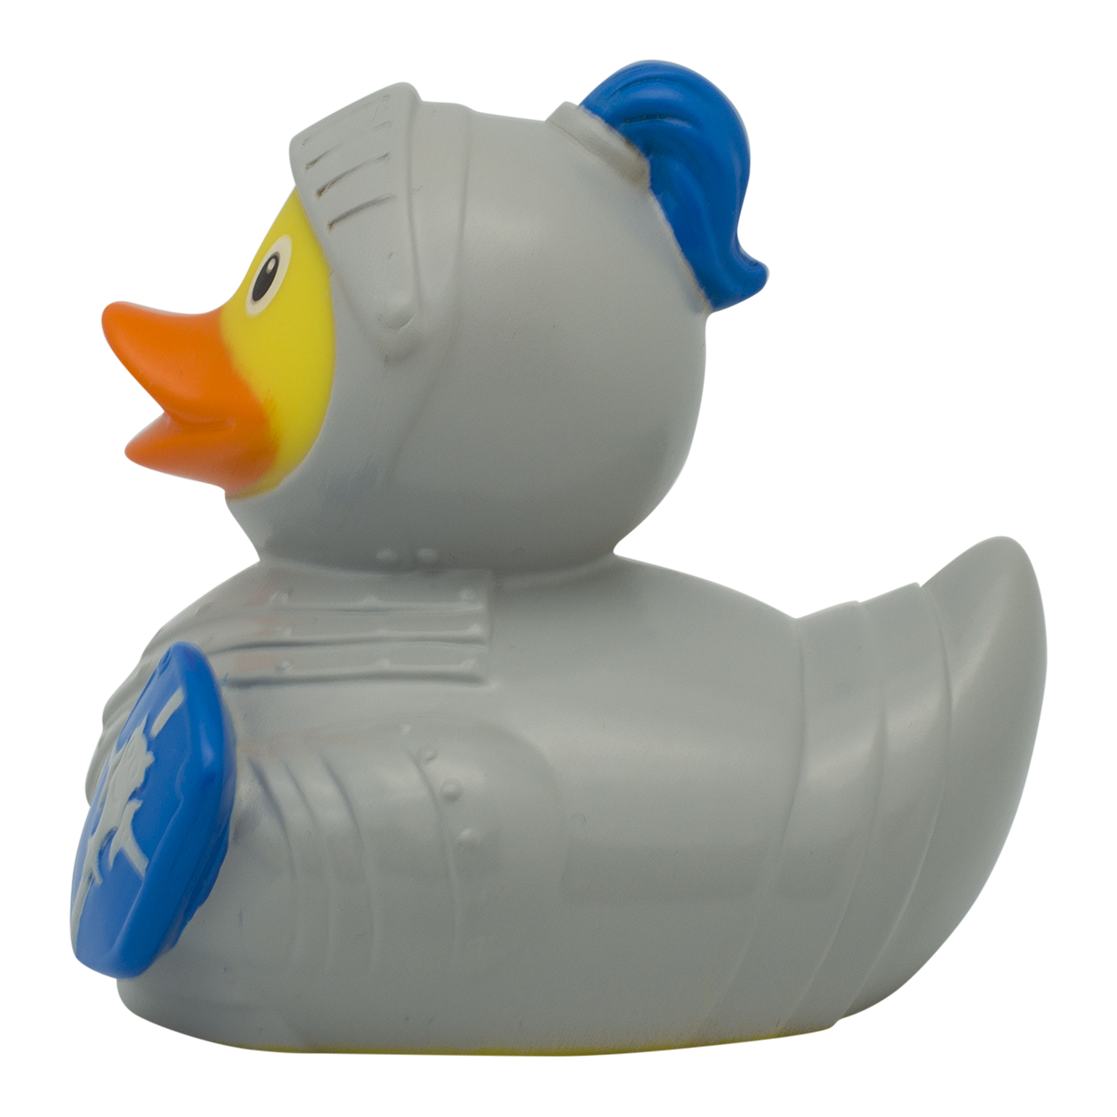 Cavaliere Duck.